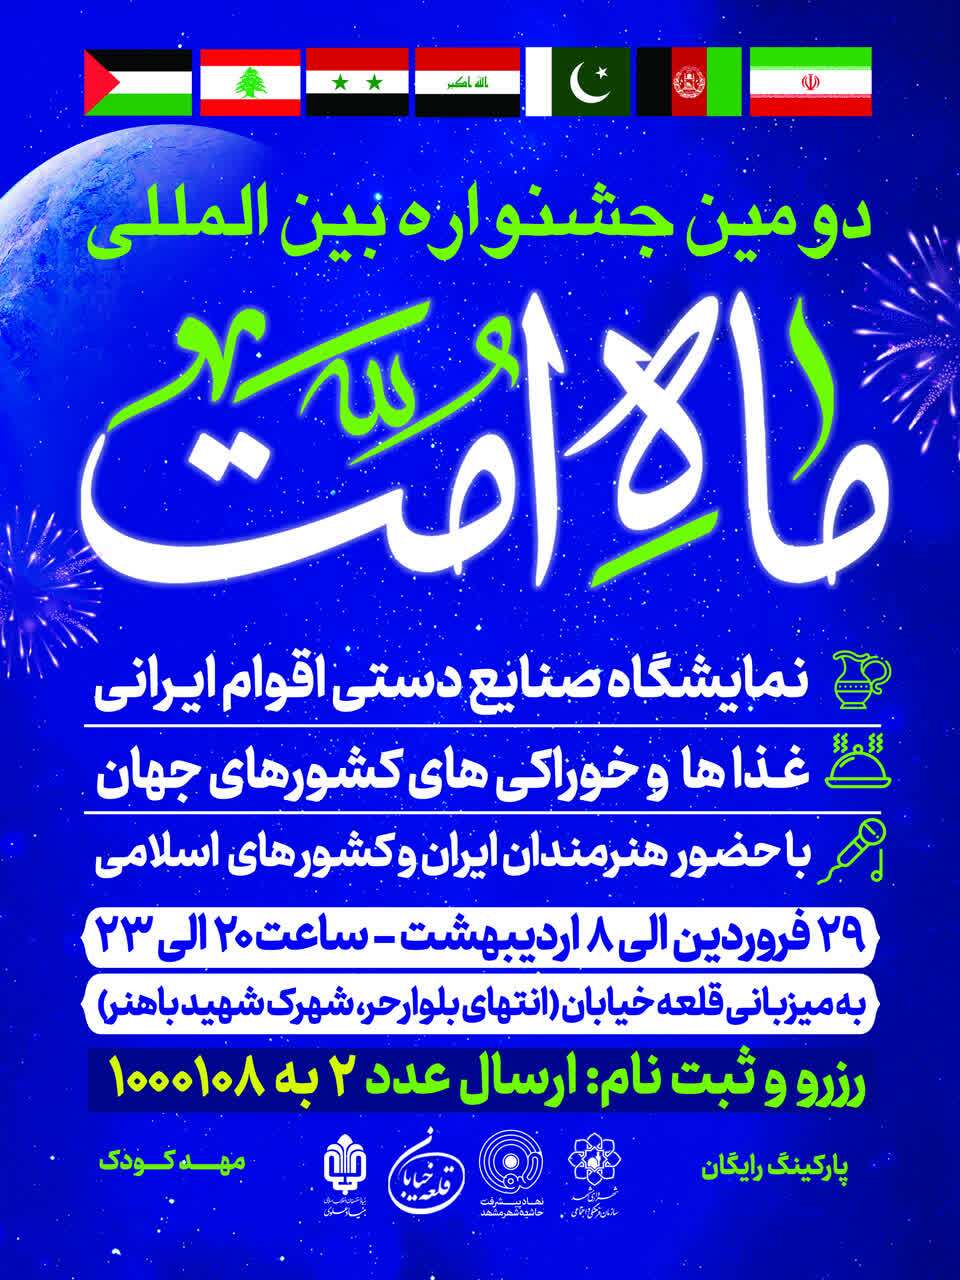 برگزاری جشنواره بین المللی ماه امت در مشهد